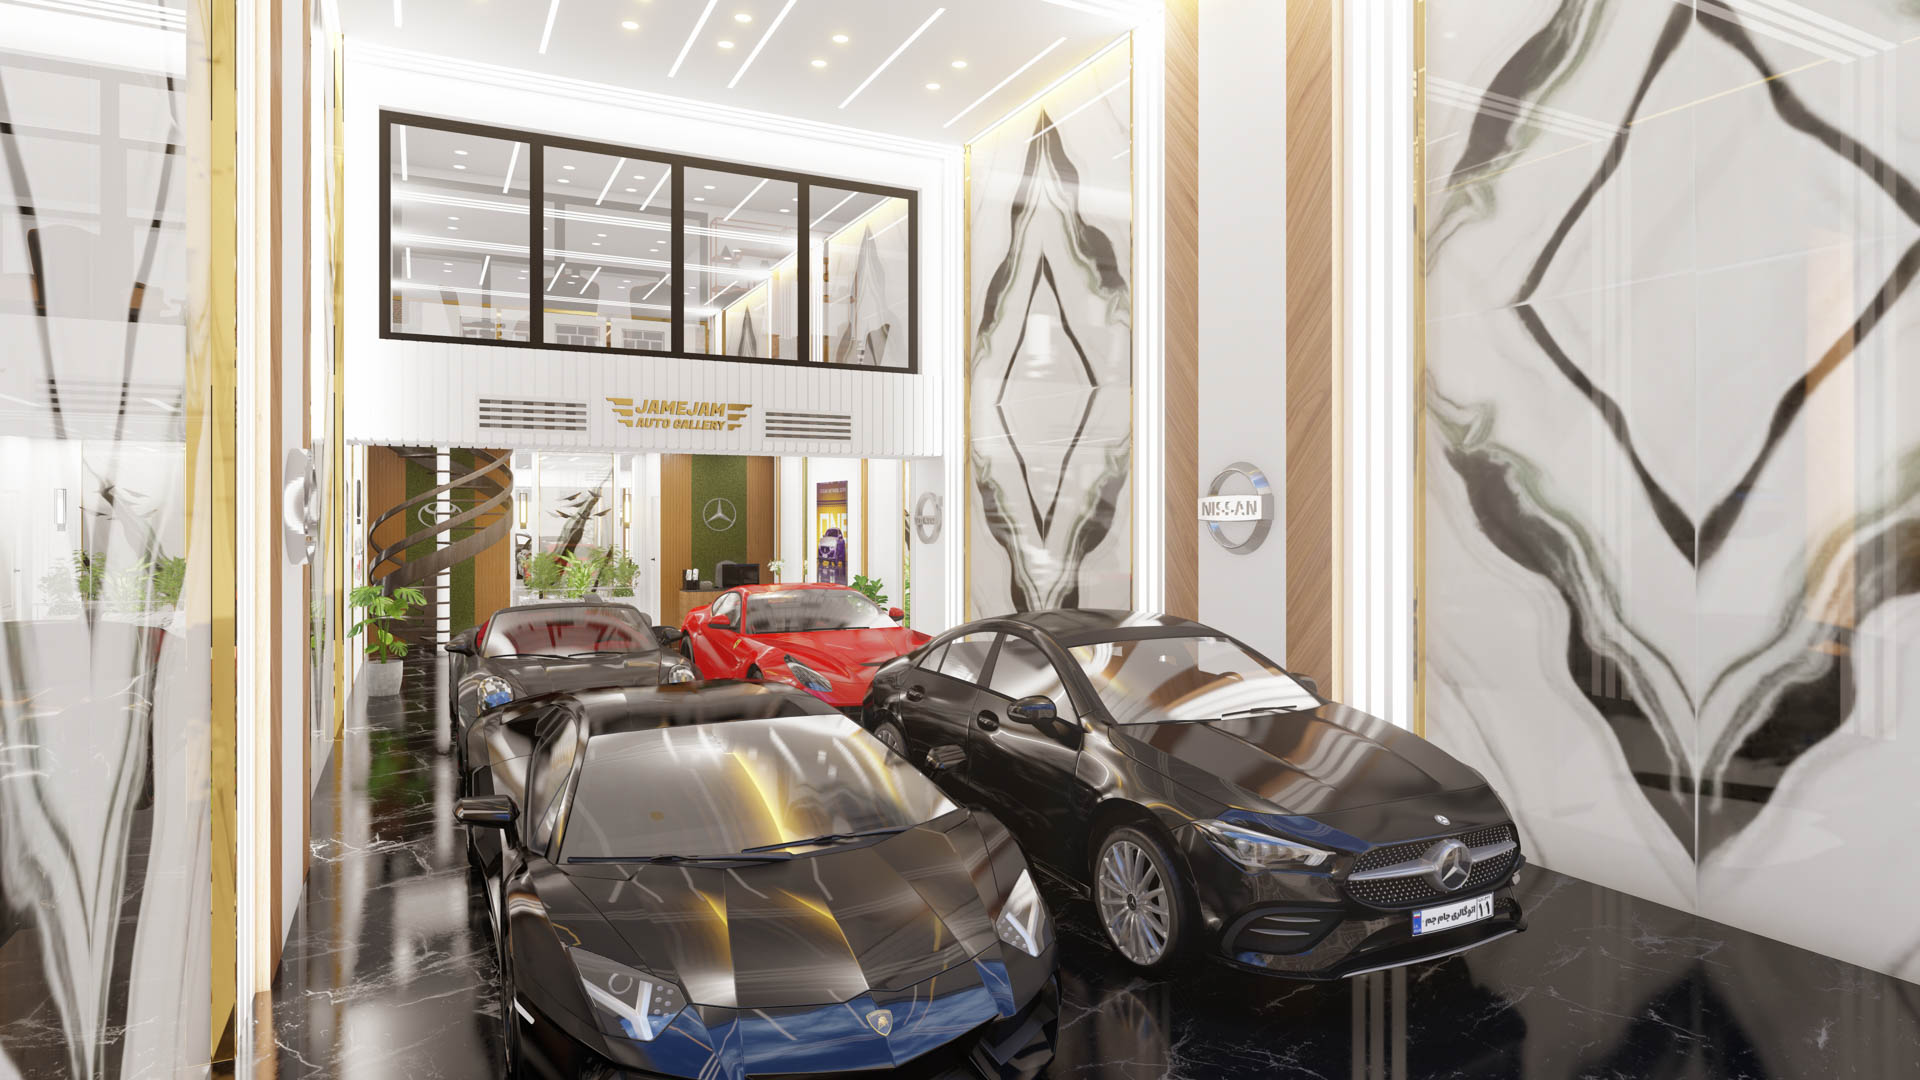 Auto gallery interior design 3D visualization – damavand august 2022